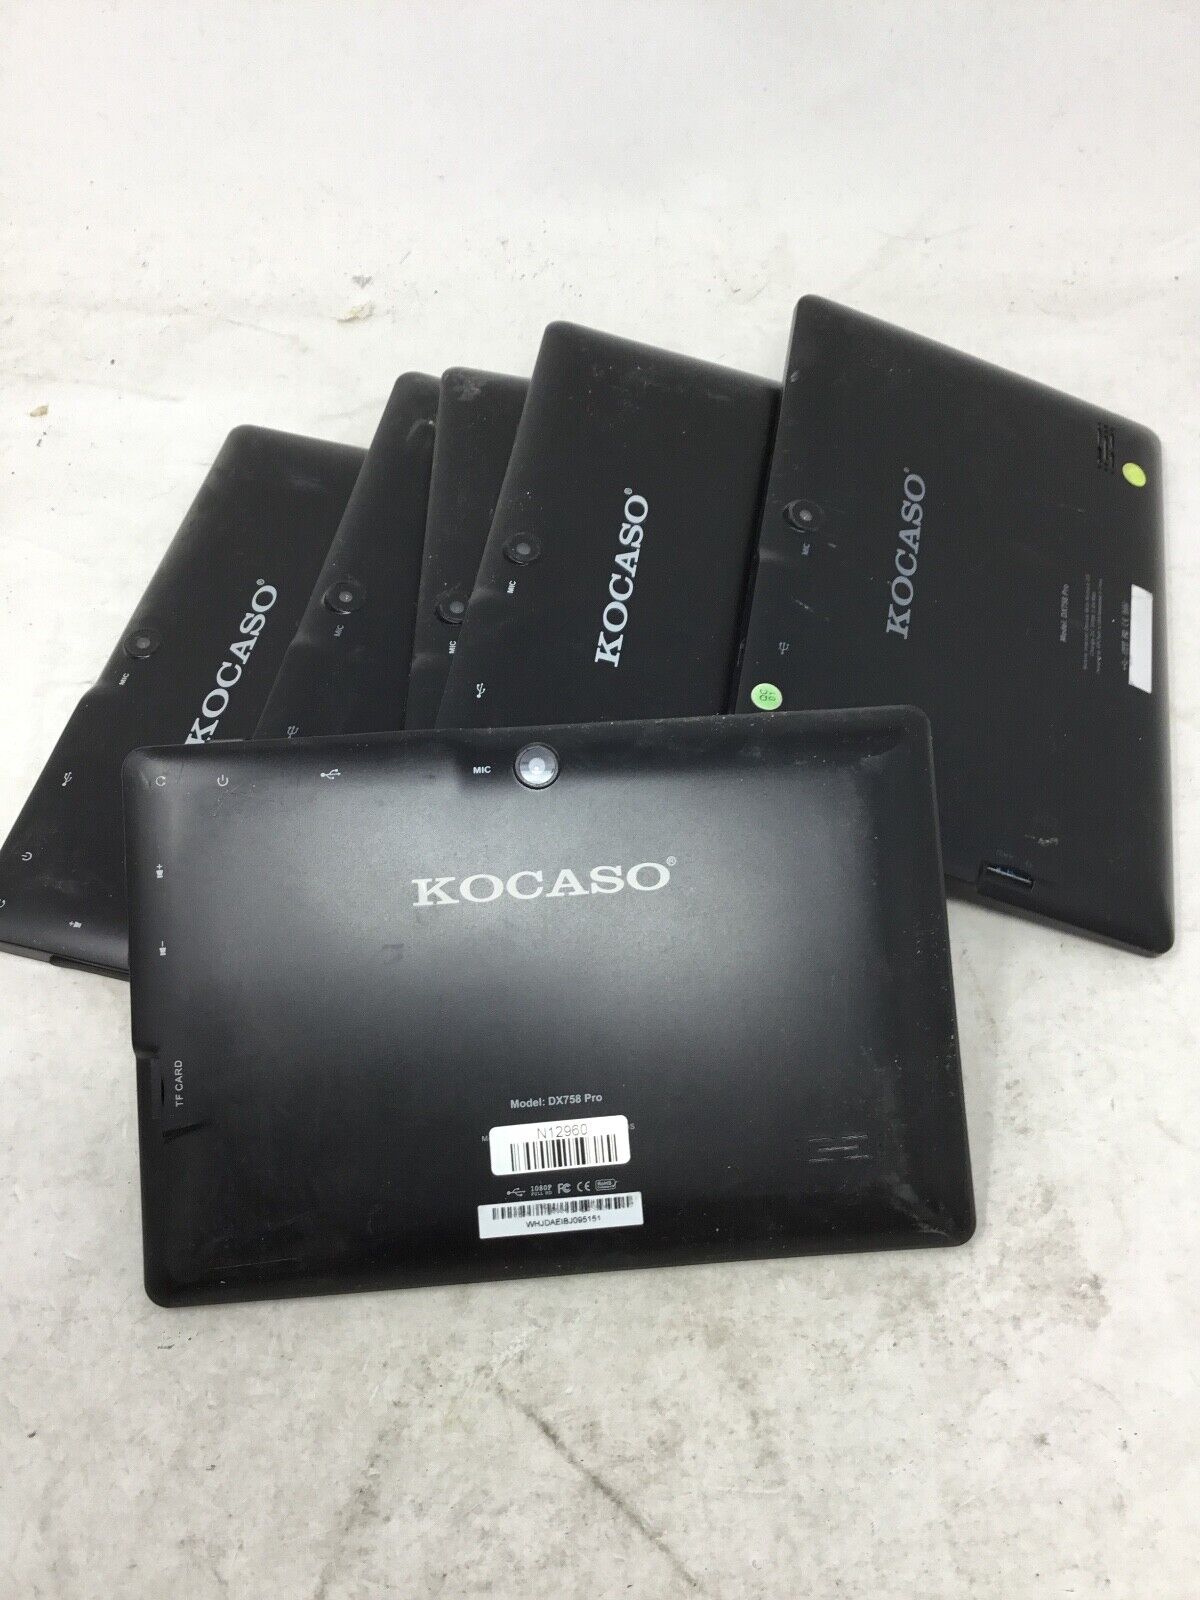 Kocaso Tablet Black Model DX758 Pro -LOT OF 6-FOR PARTS-READ DESCRIPTION -rz